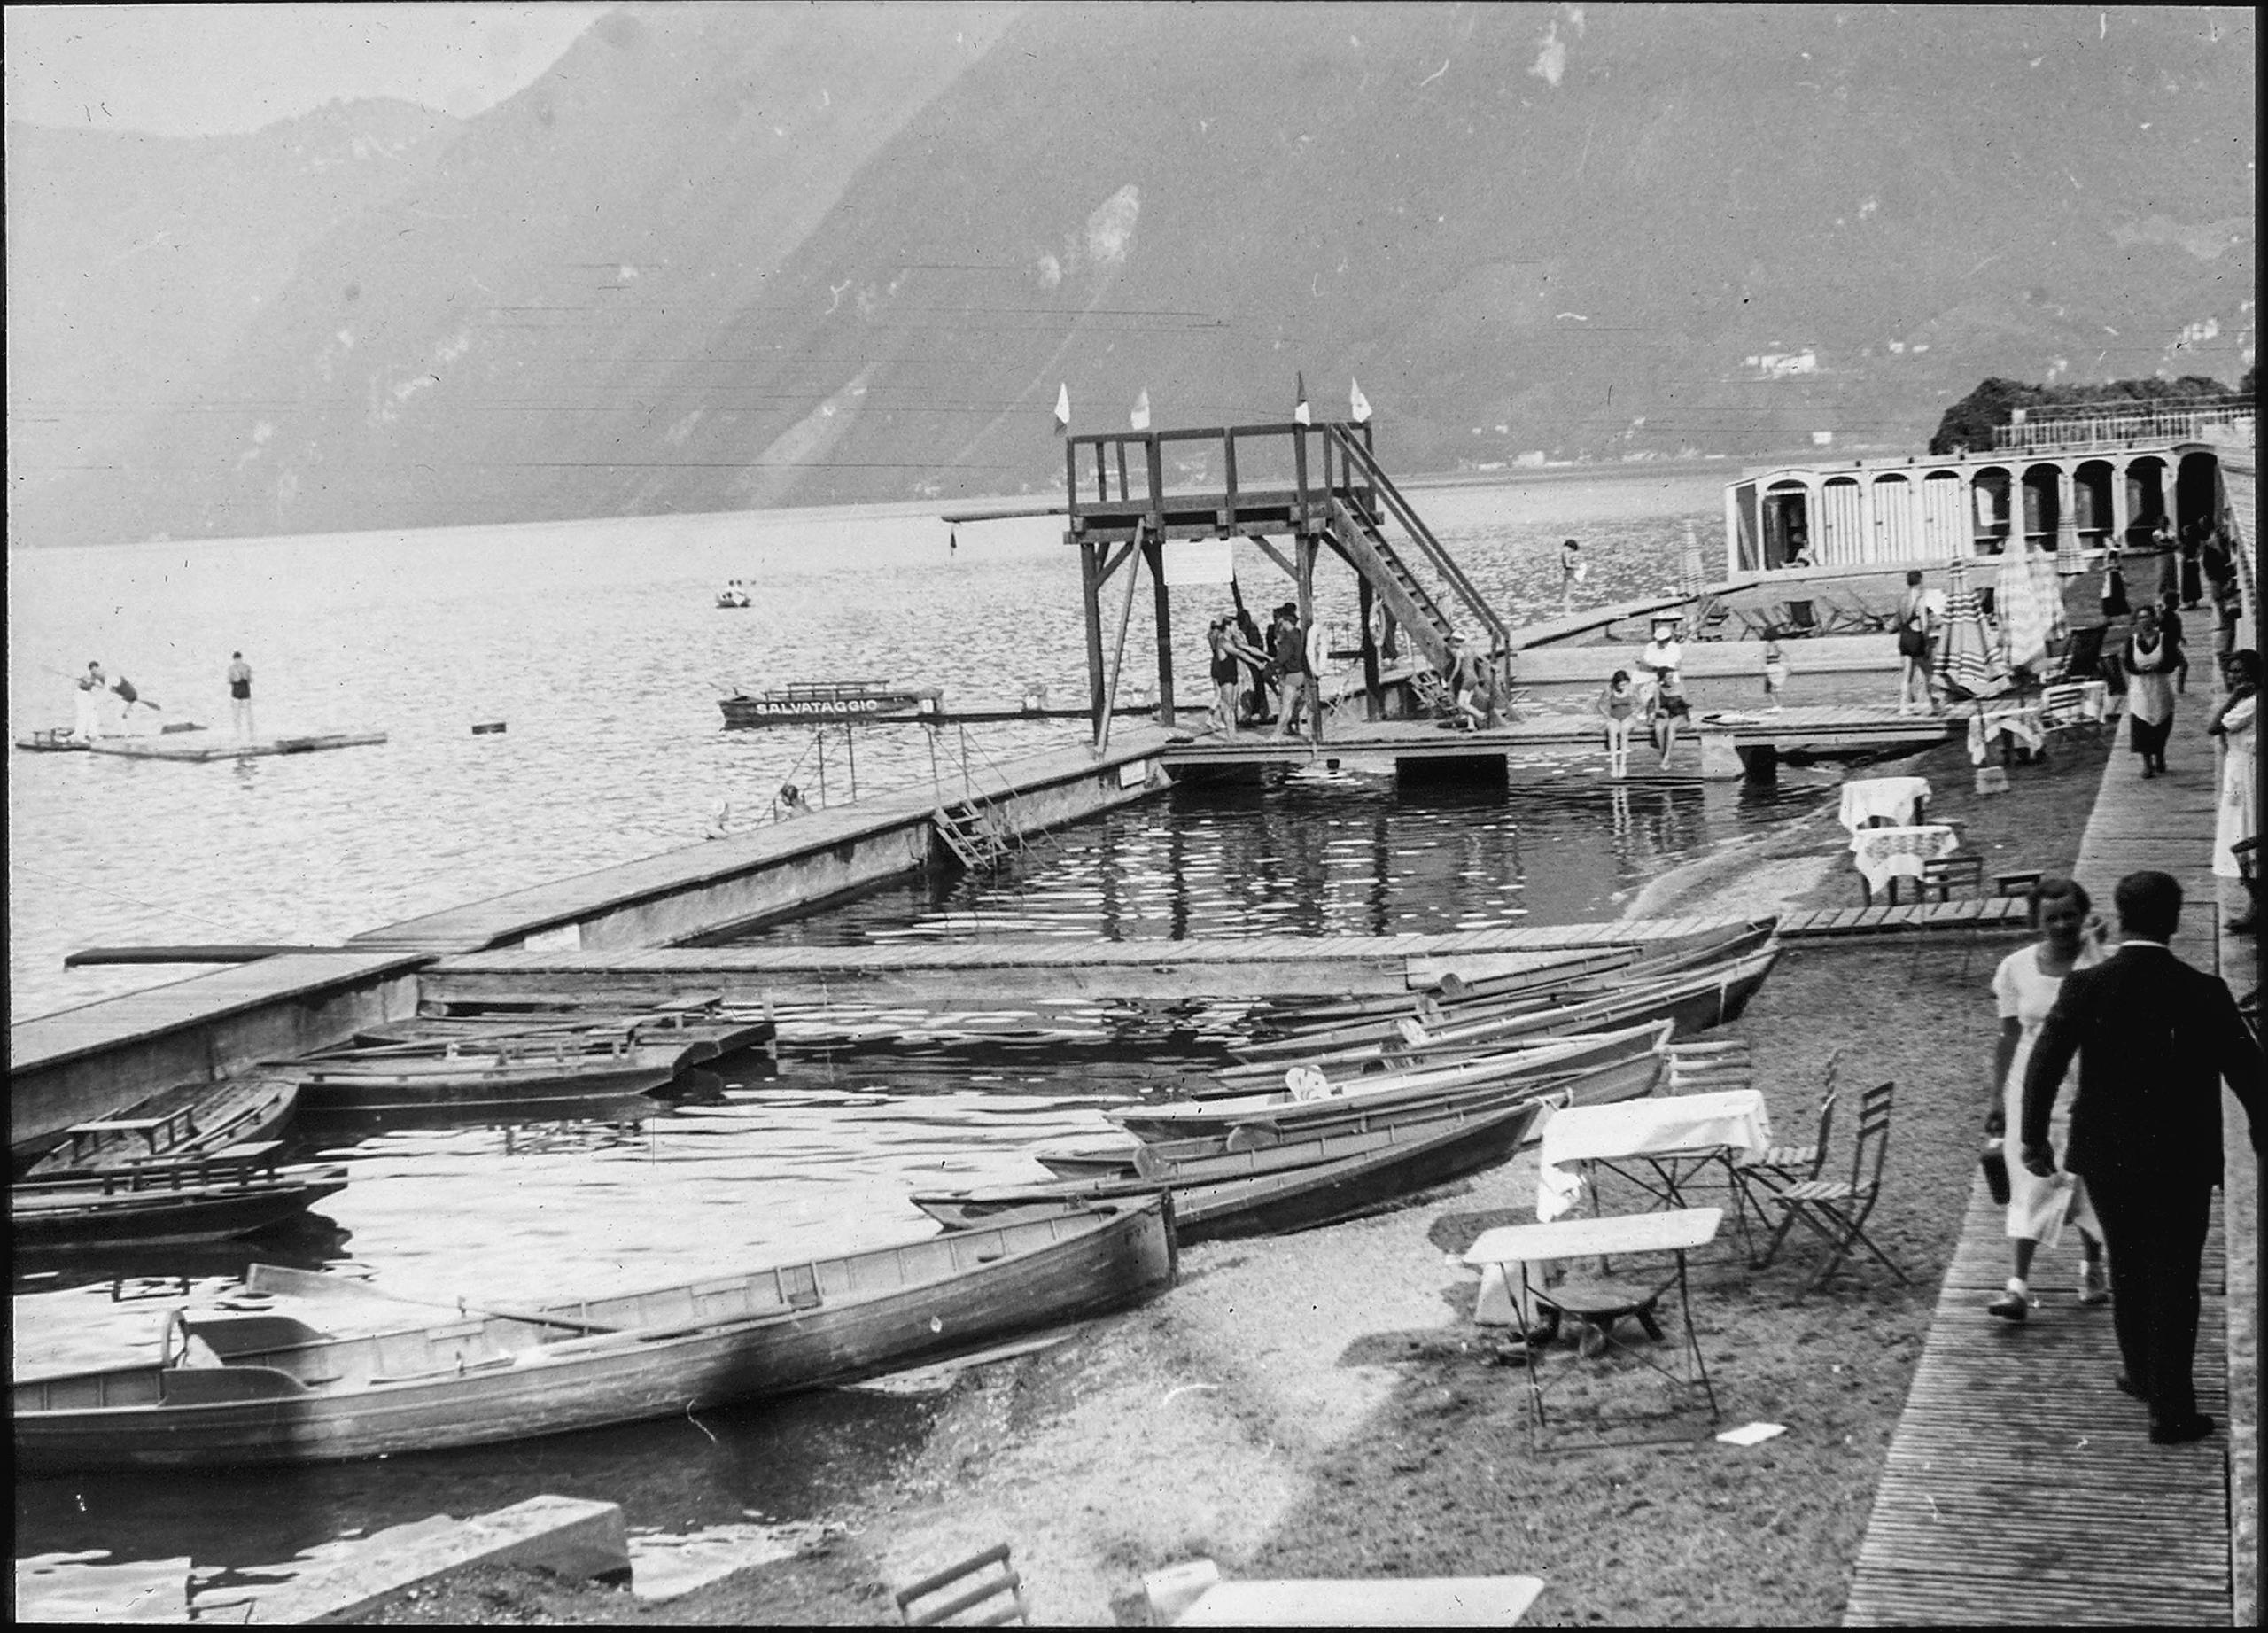 Barcas en el lago de Lugano